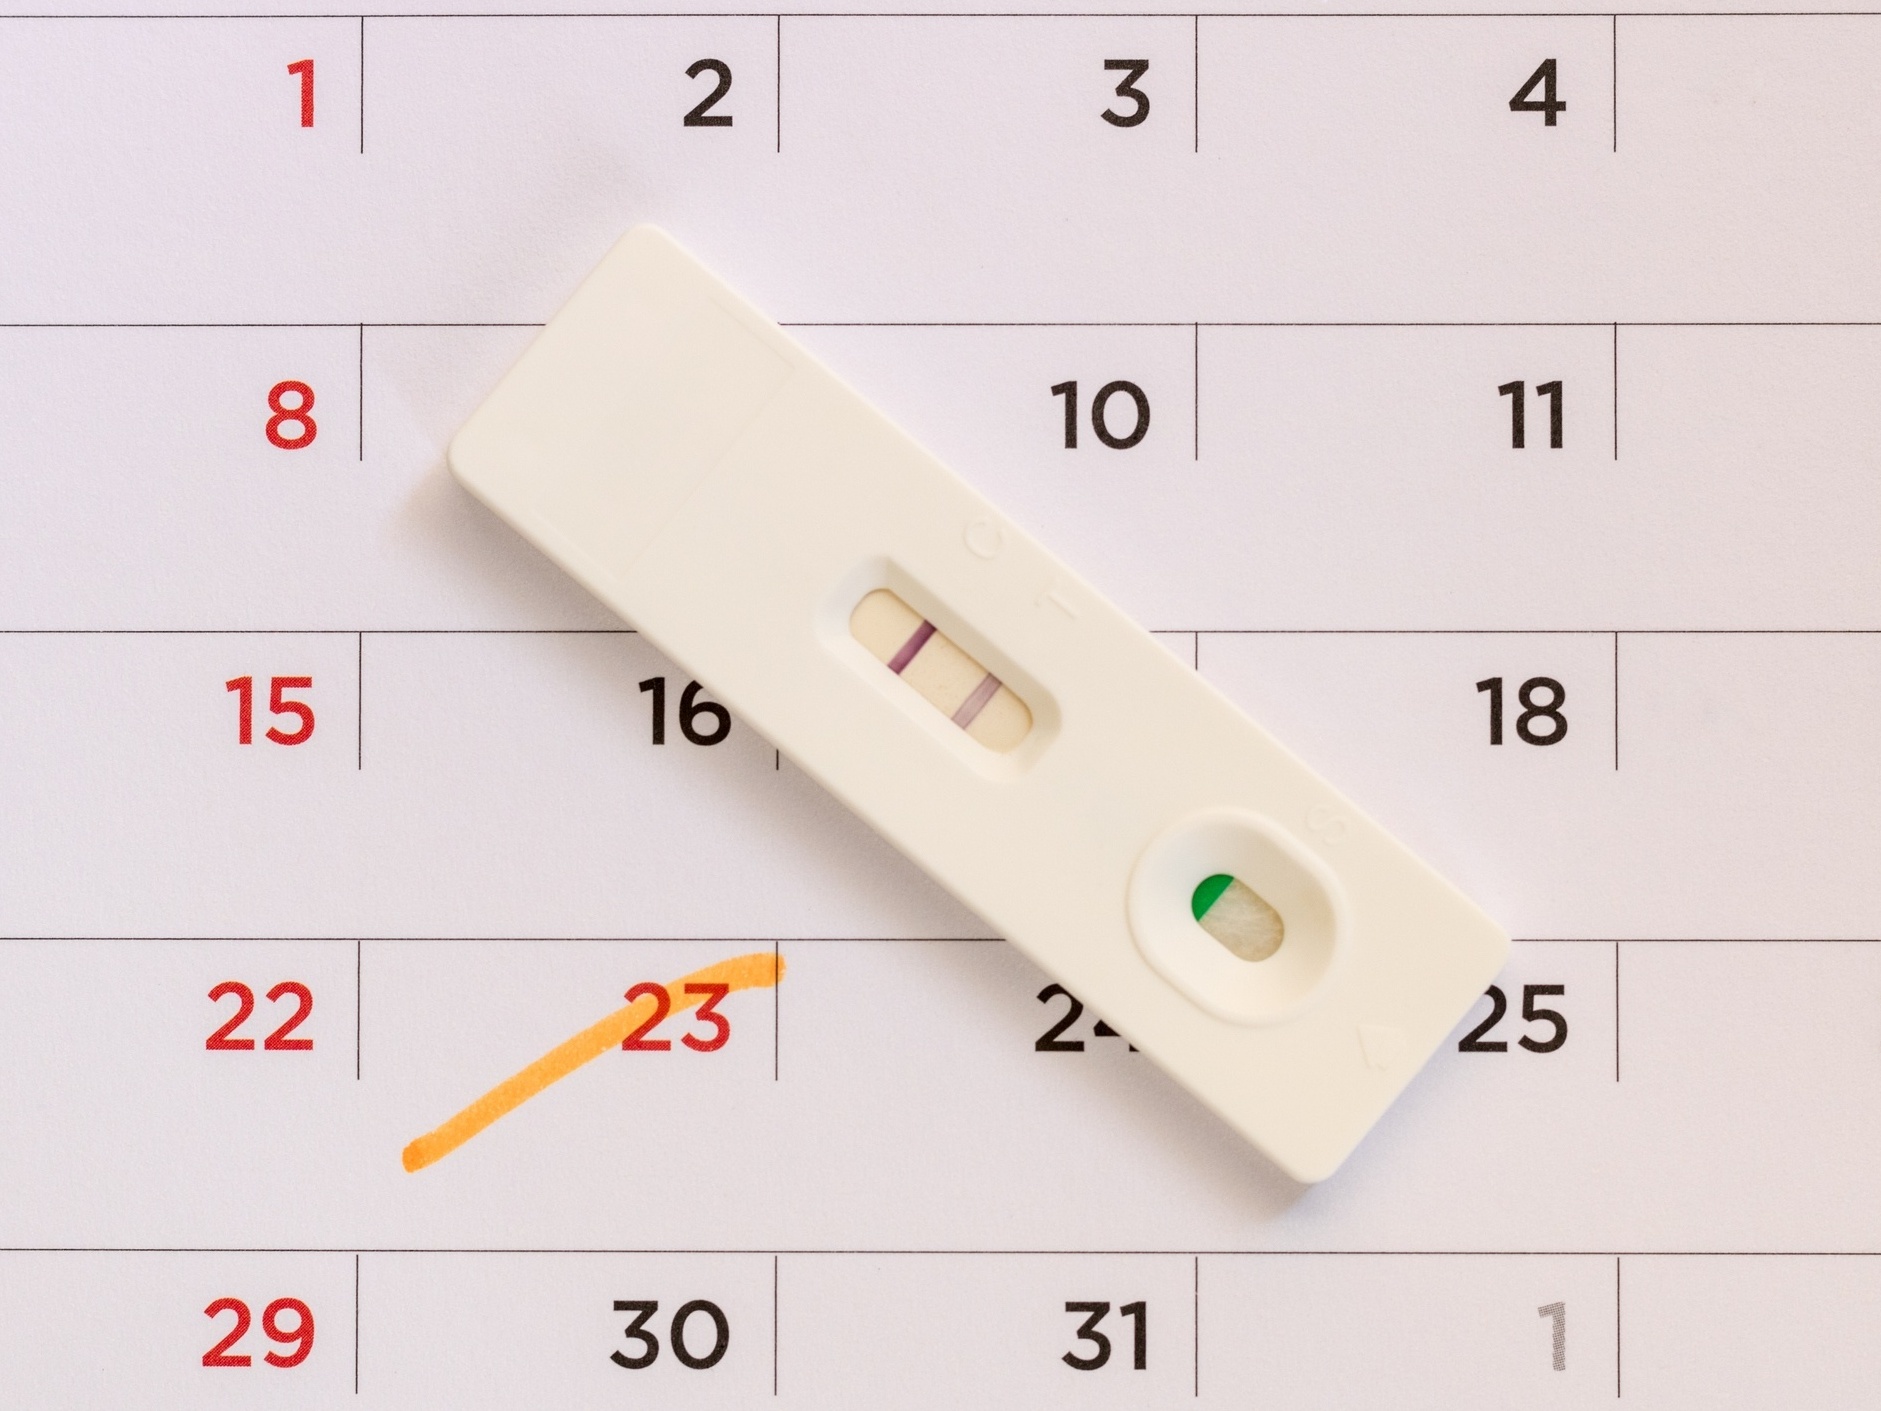 É normal menstruar duas vezes no mês? O que pode ser?